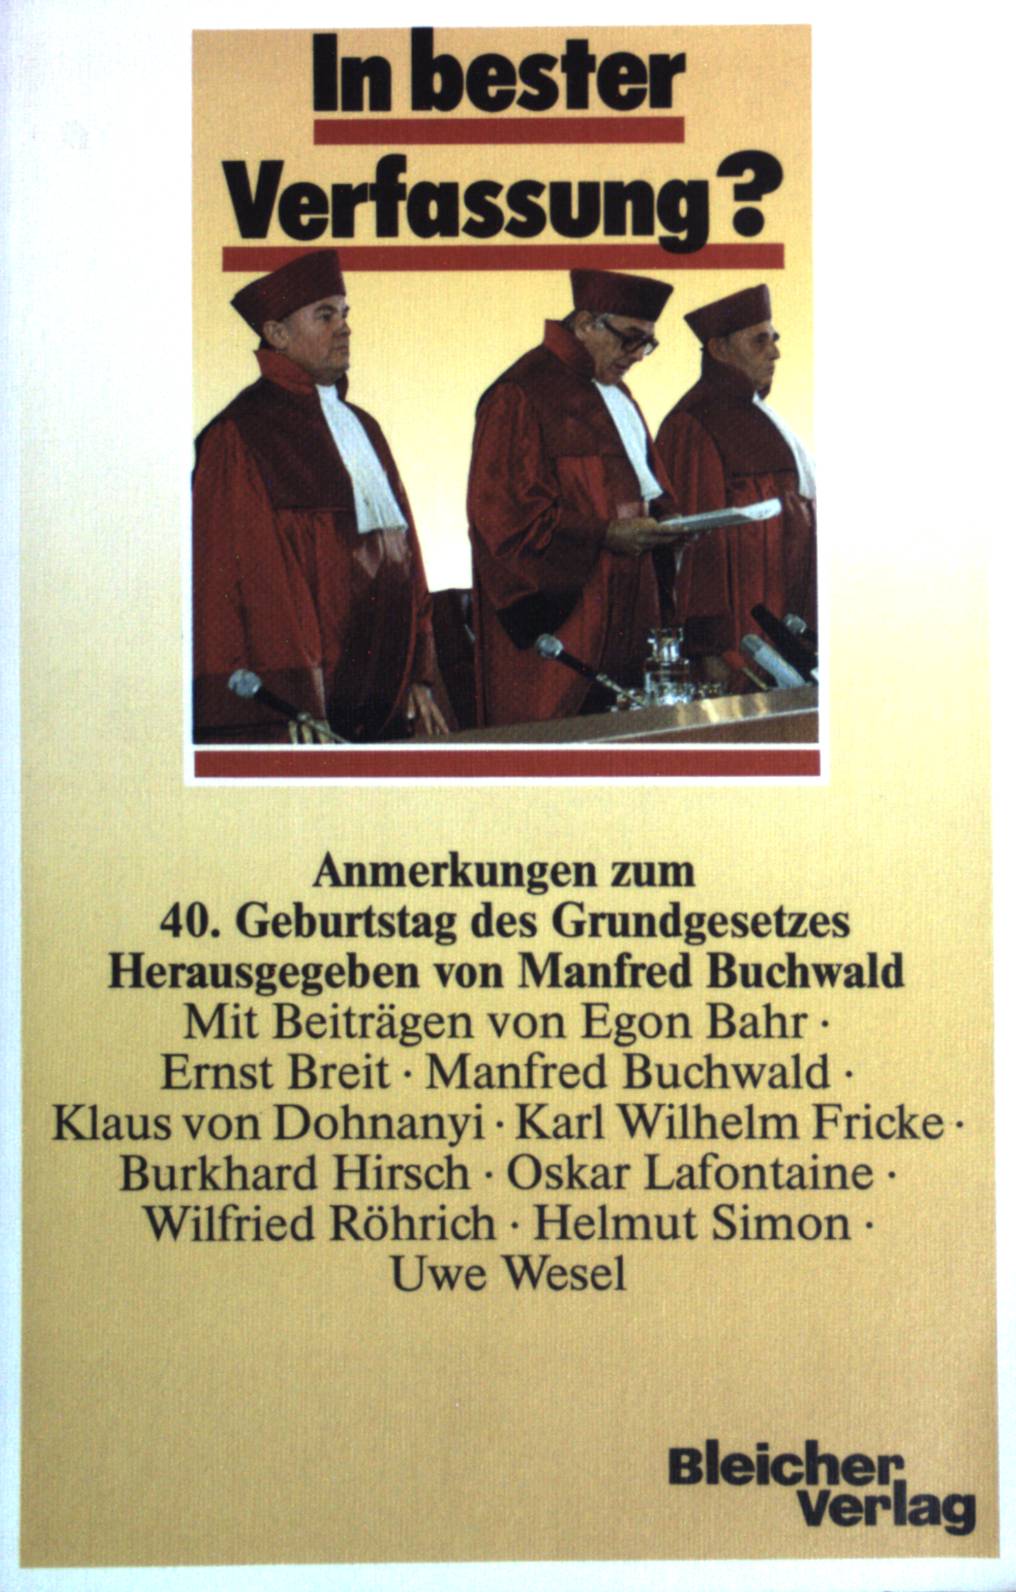 In bester Verfassung? : Anmerkungen zum 40. Geburtstag des Grundgesetzes. - Buchwald, Manfred (Herausgeber) und Egon Bahr